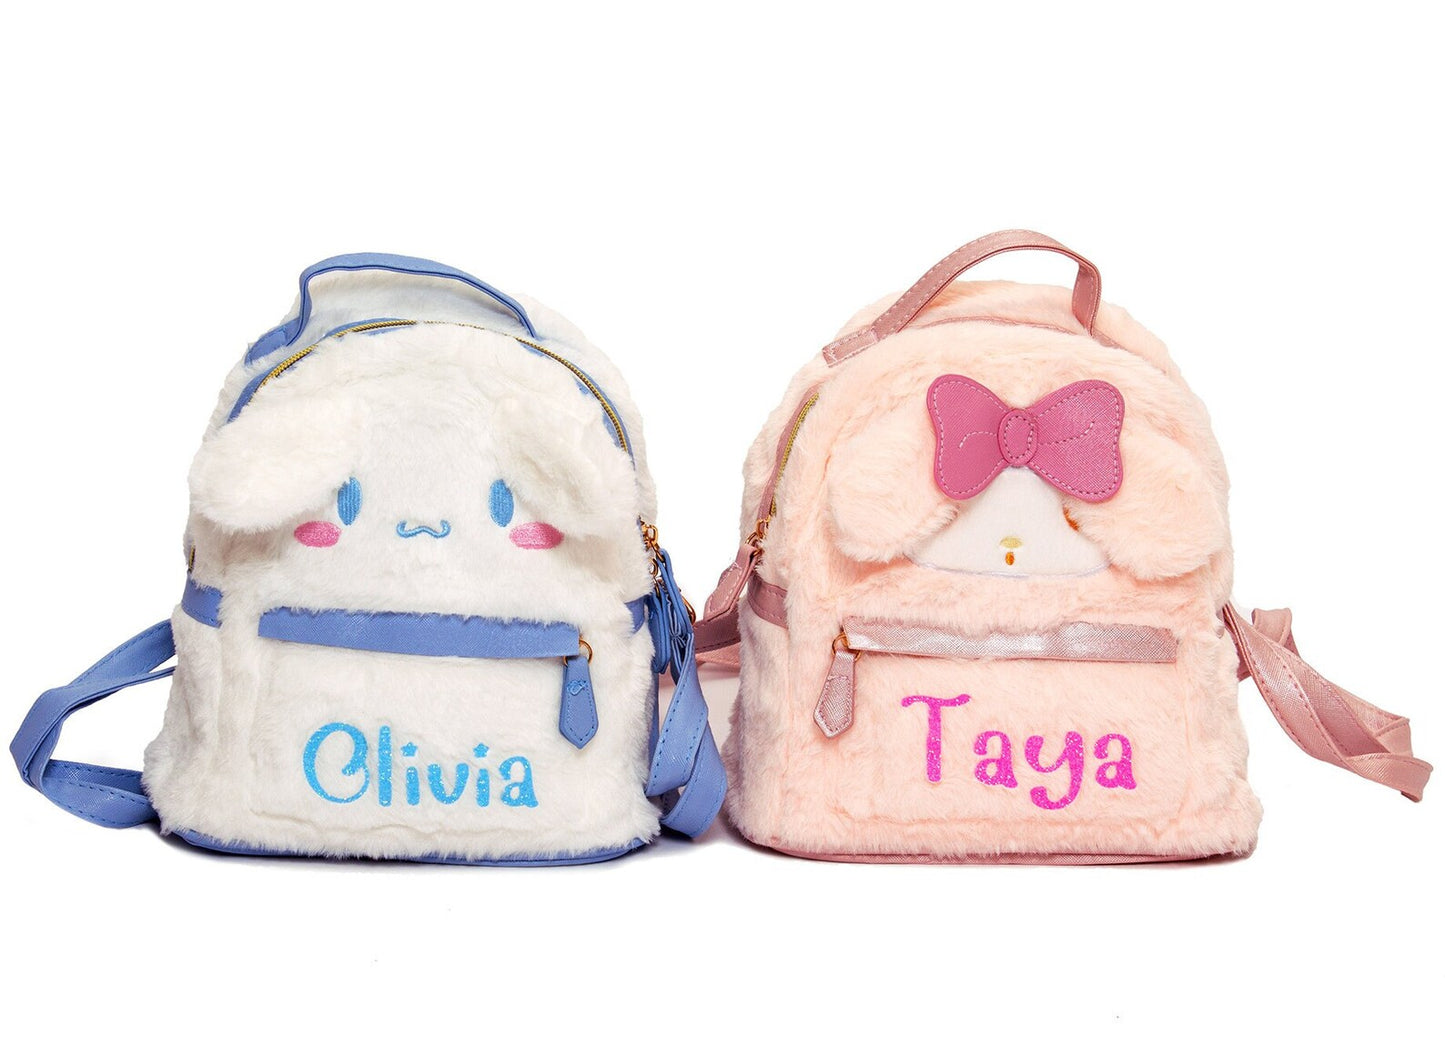 Toddler Custom Backpack